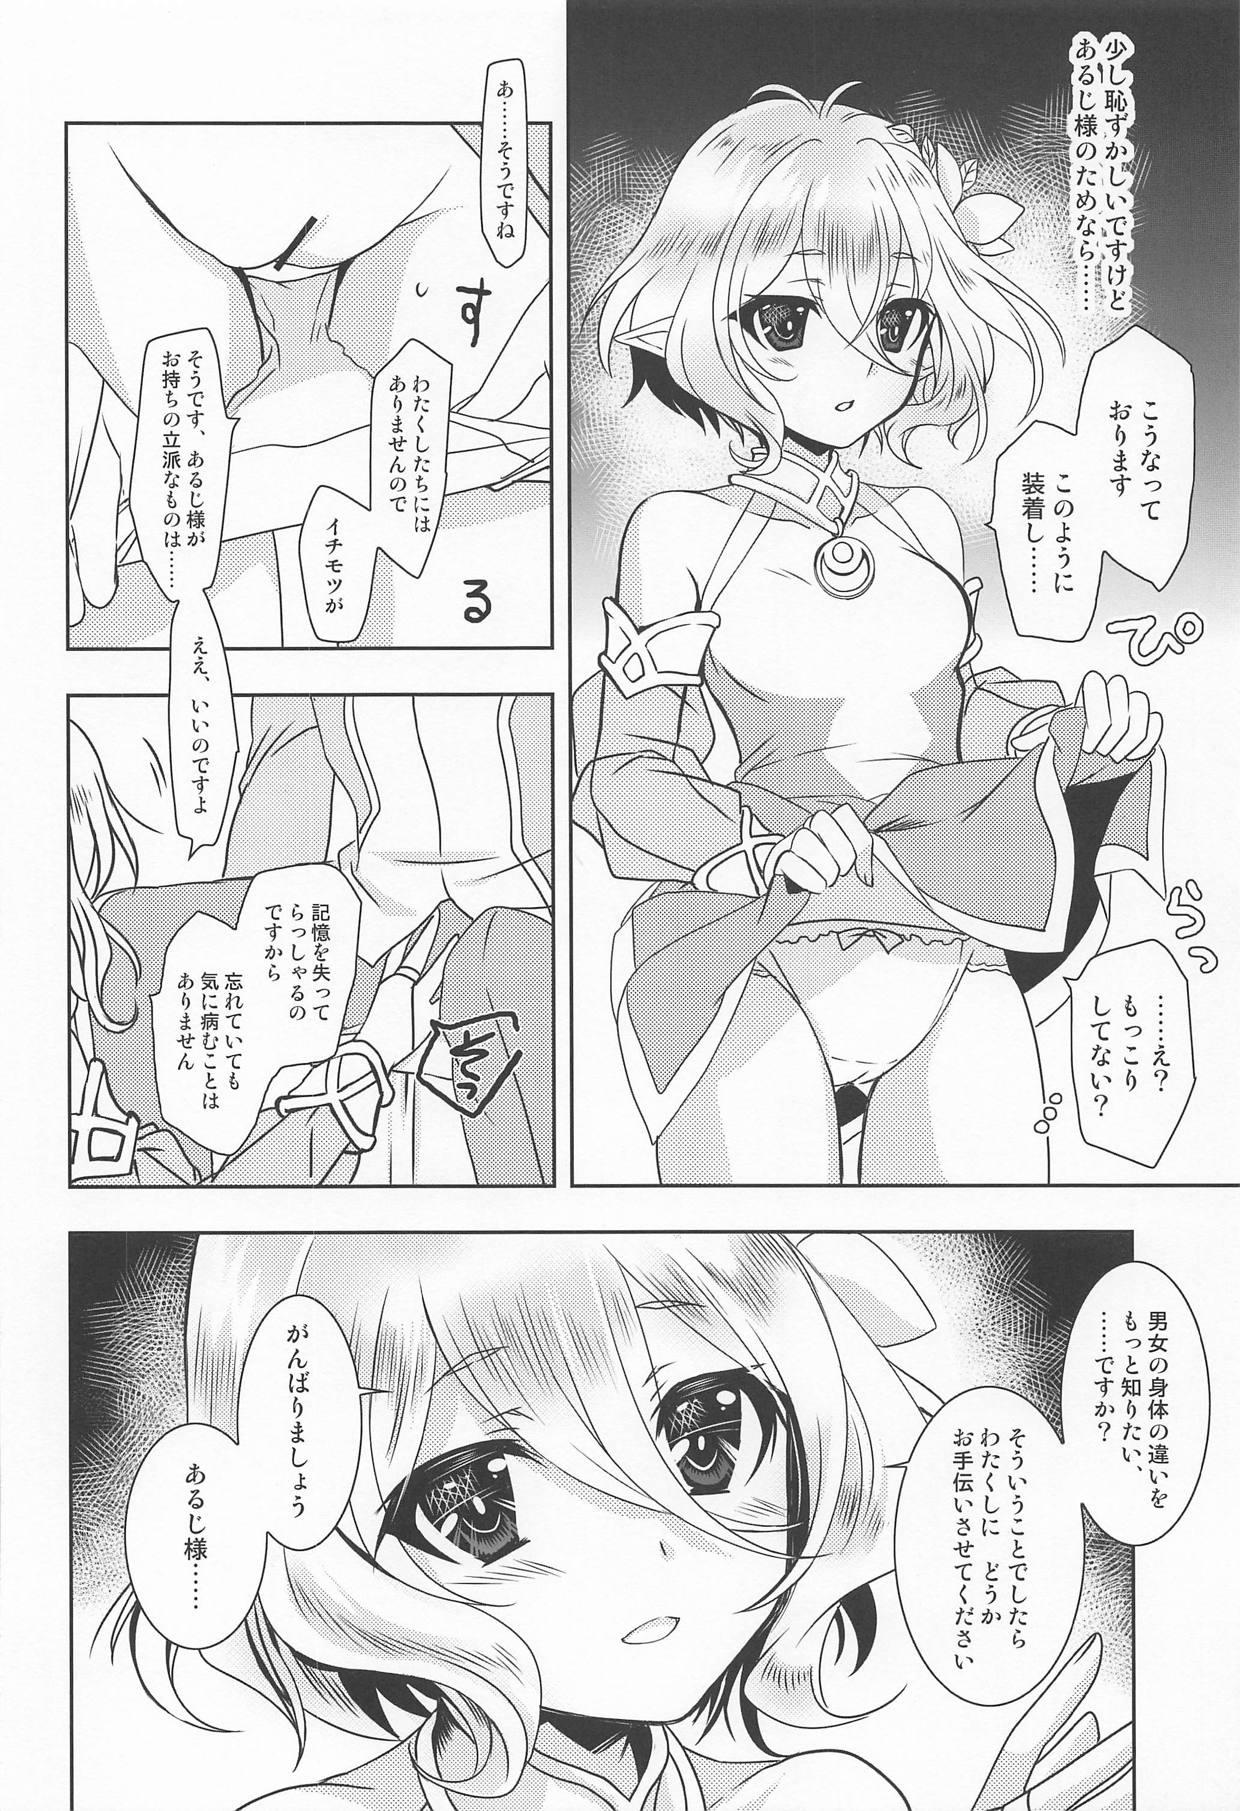 Best Blowjob Ever Aruji-sama ni Naisho no Memory Piece - Princess connect Porno - Page 5